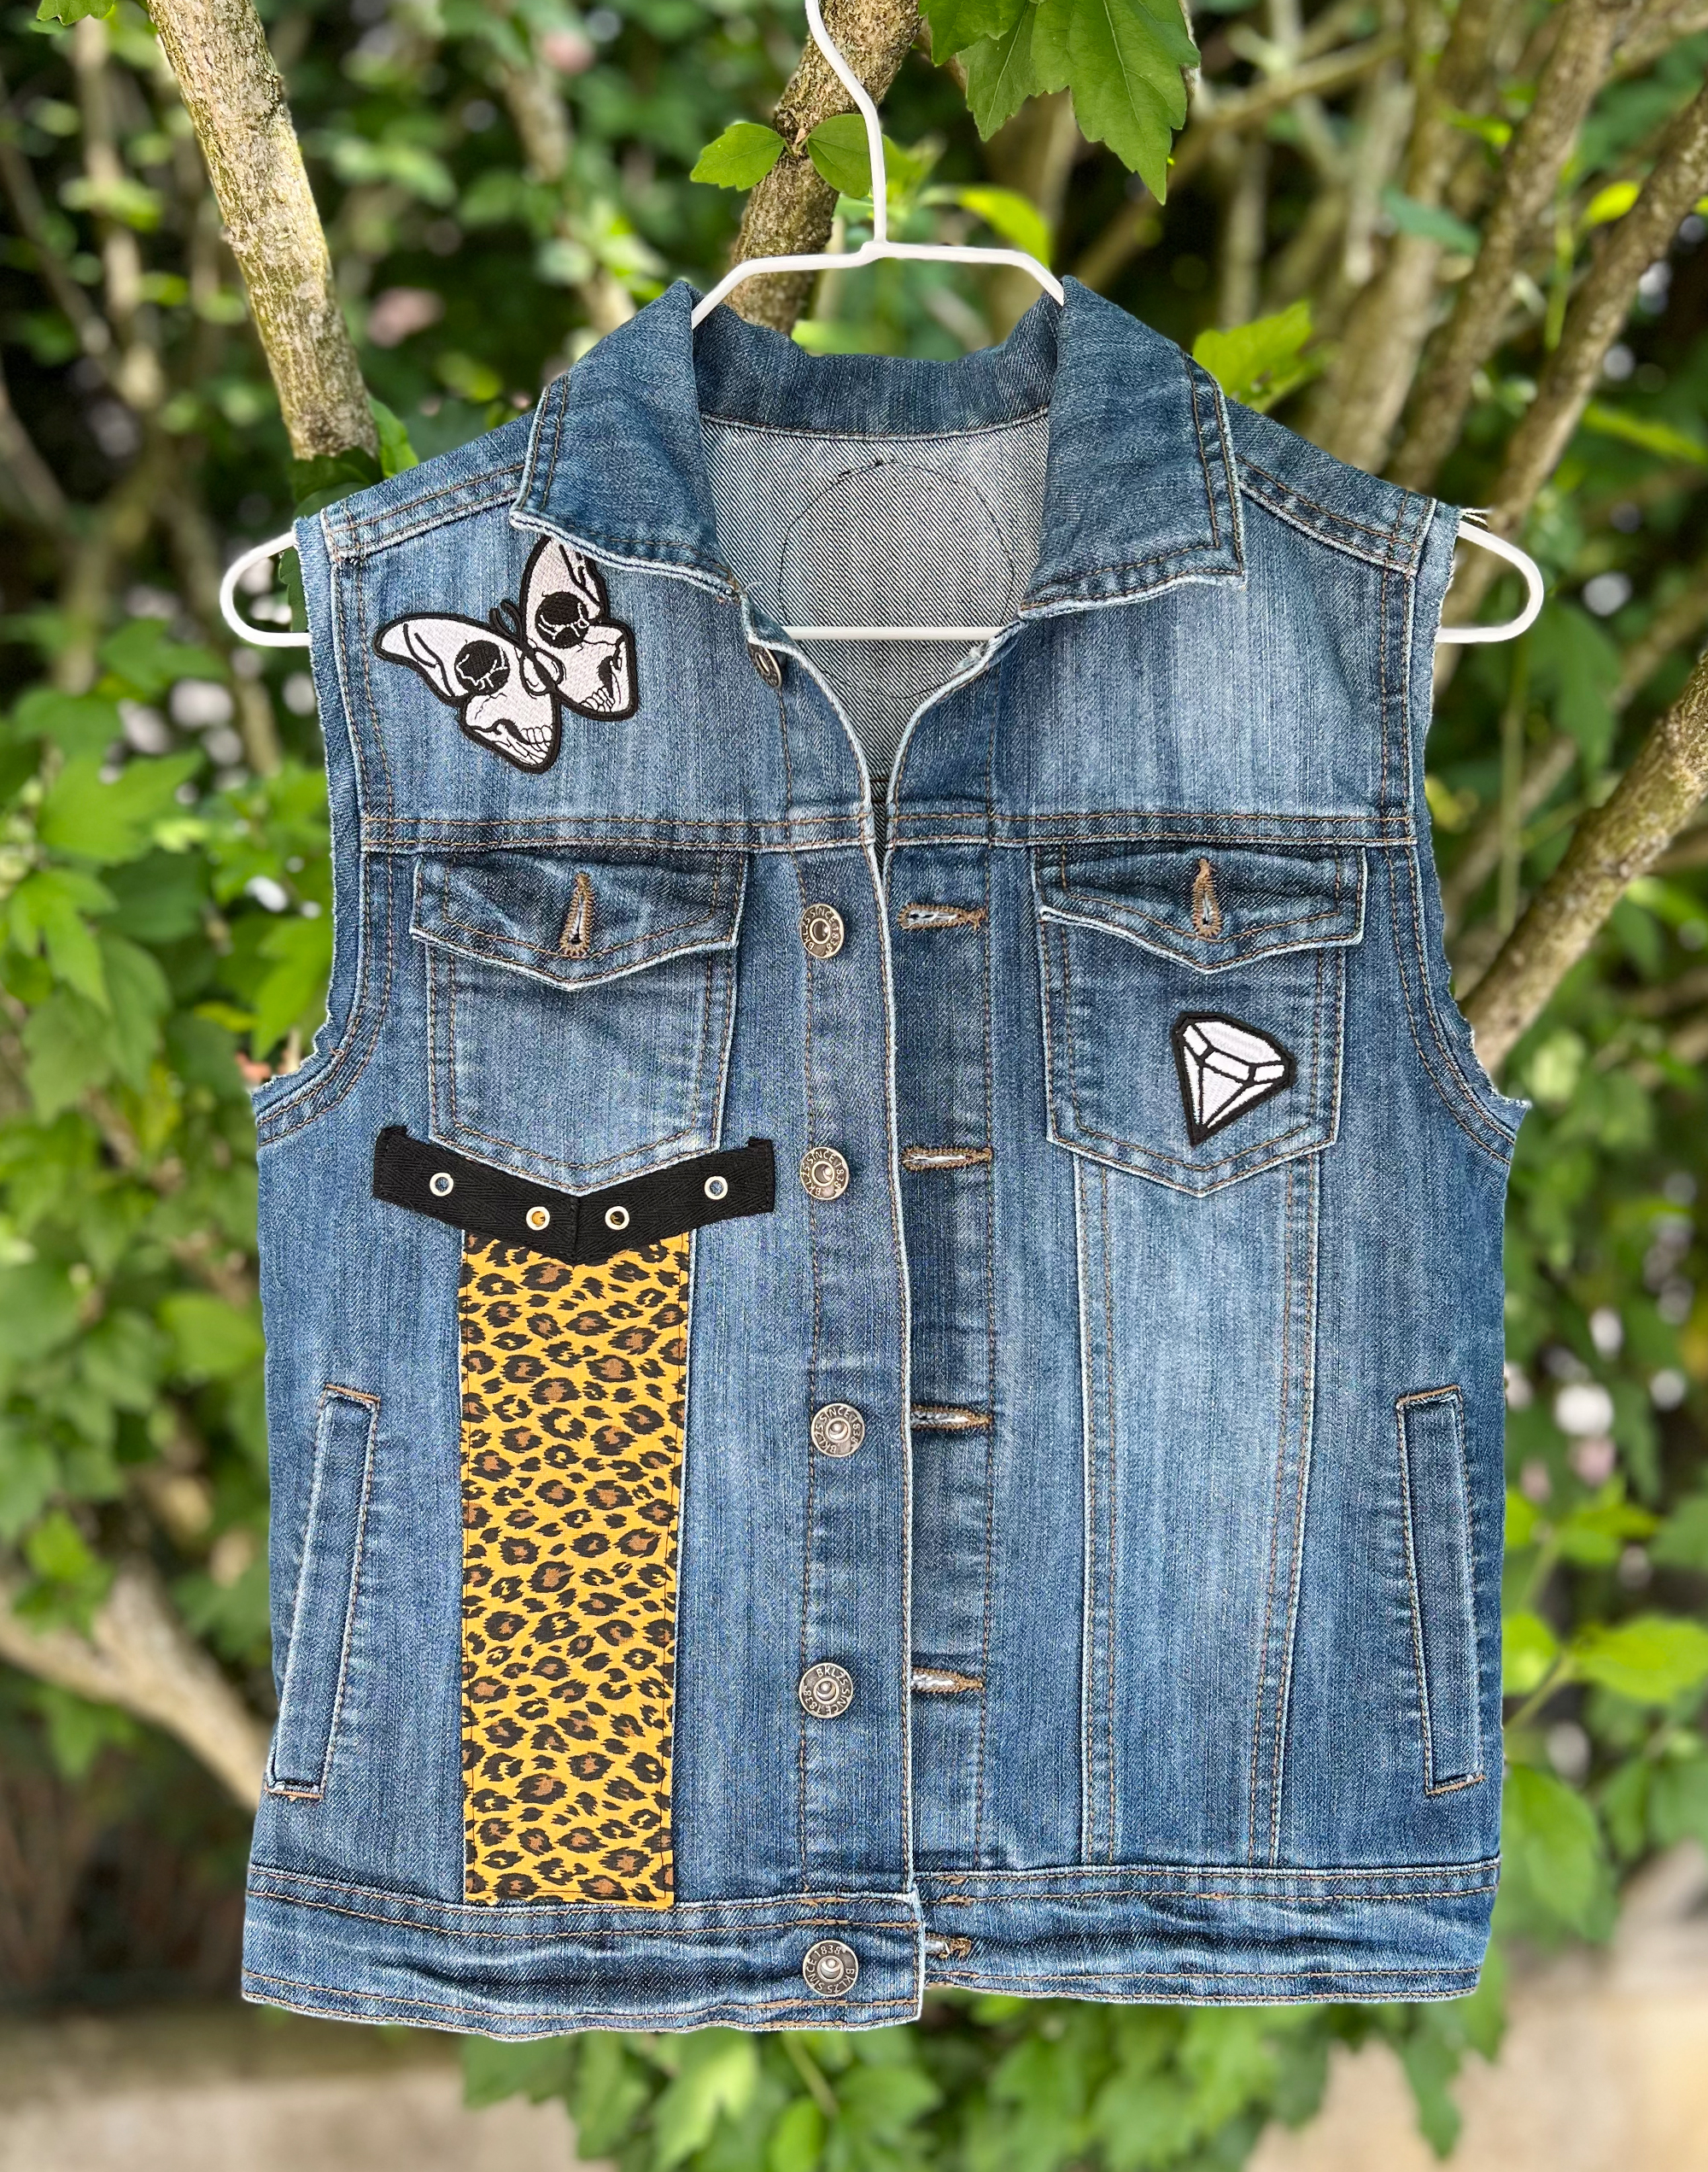 Veste en jean customisée pour enfant, veste à patchs, battle jacket, style punk rock. Pièce unique.